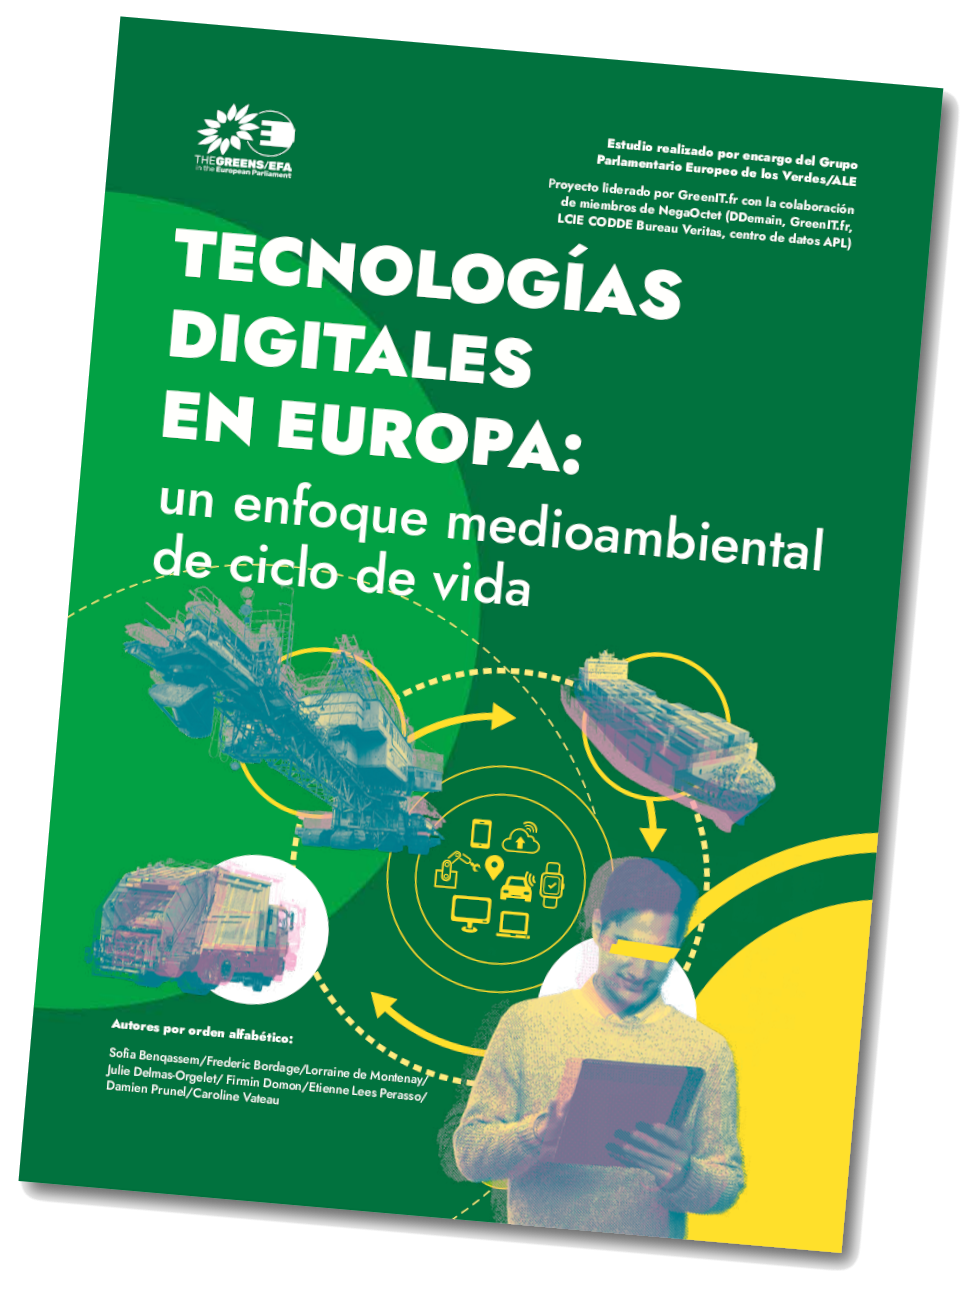 Lanzamiento del informe “Tecnologías digitales en Europa: un enfoque medioambiental de ciclo de vida”